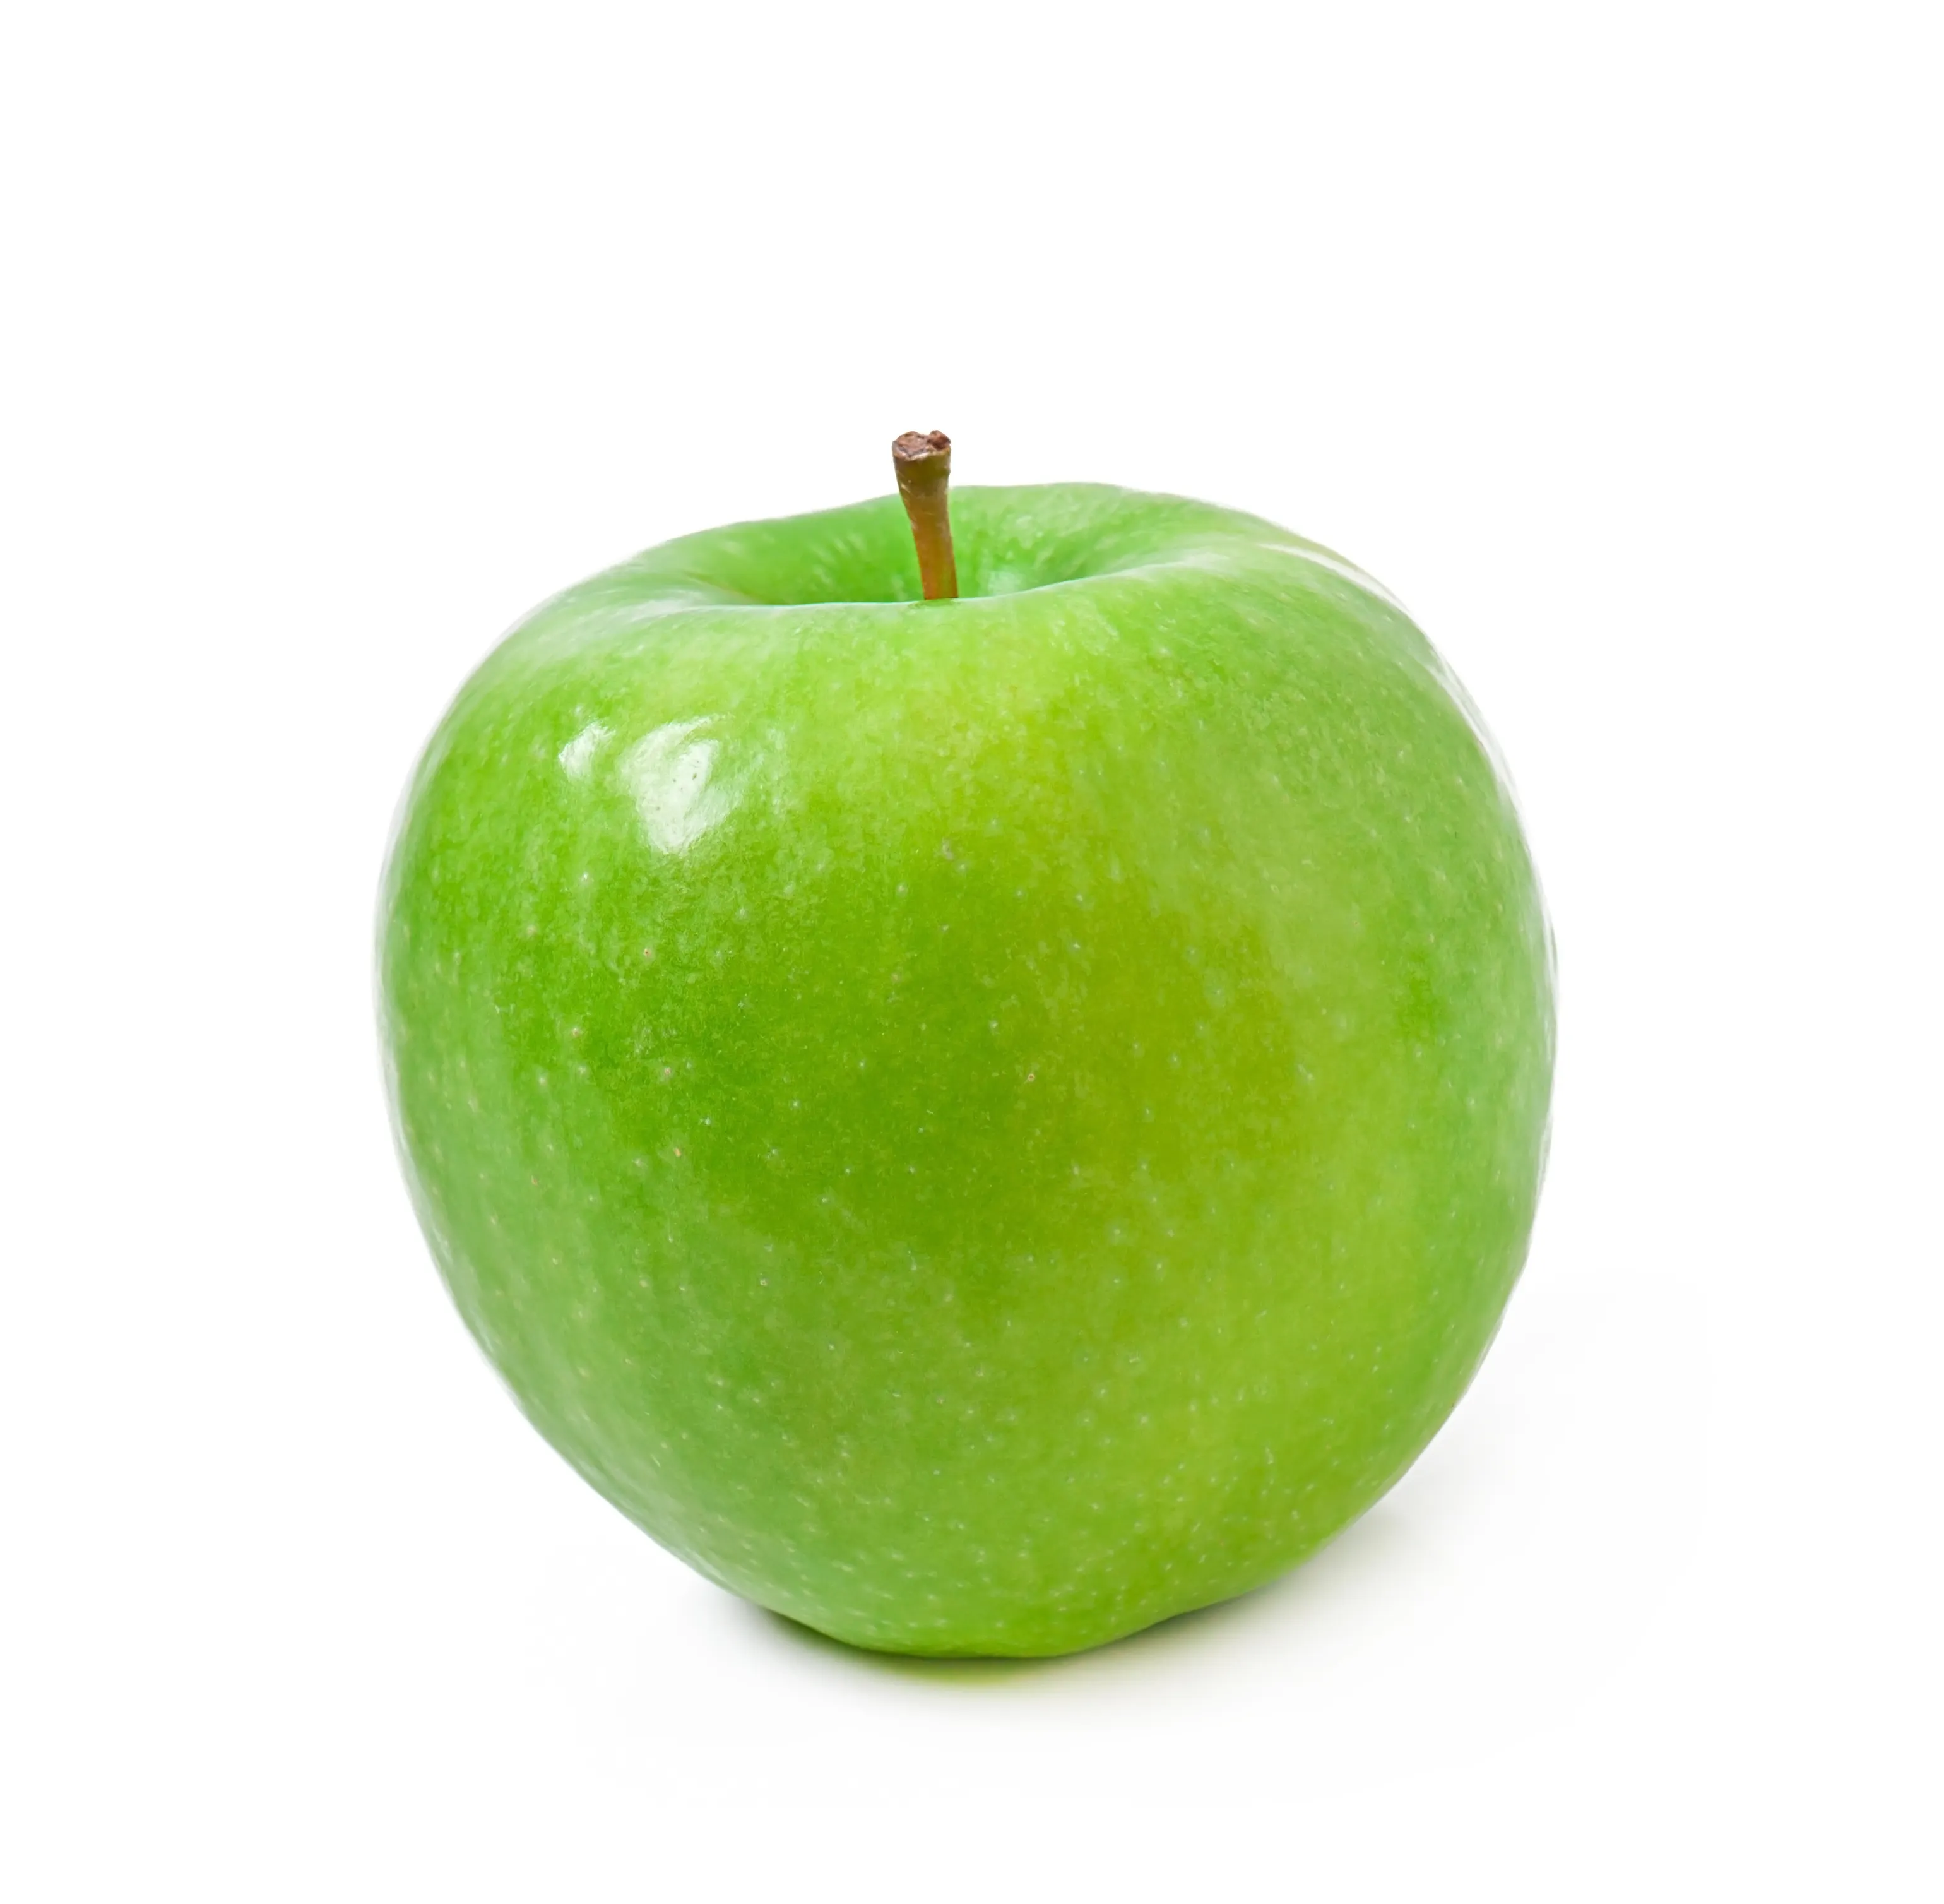 באיכות גבוהה טרי ירוק תפוח-טורקיה (אנטליה) 2022